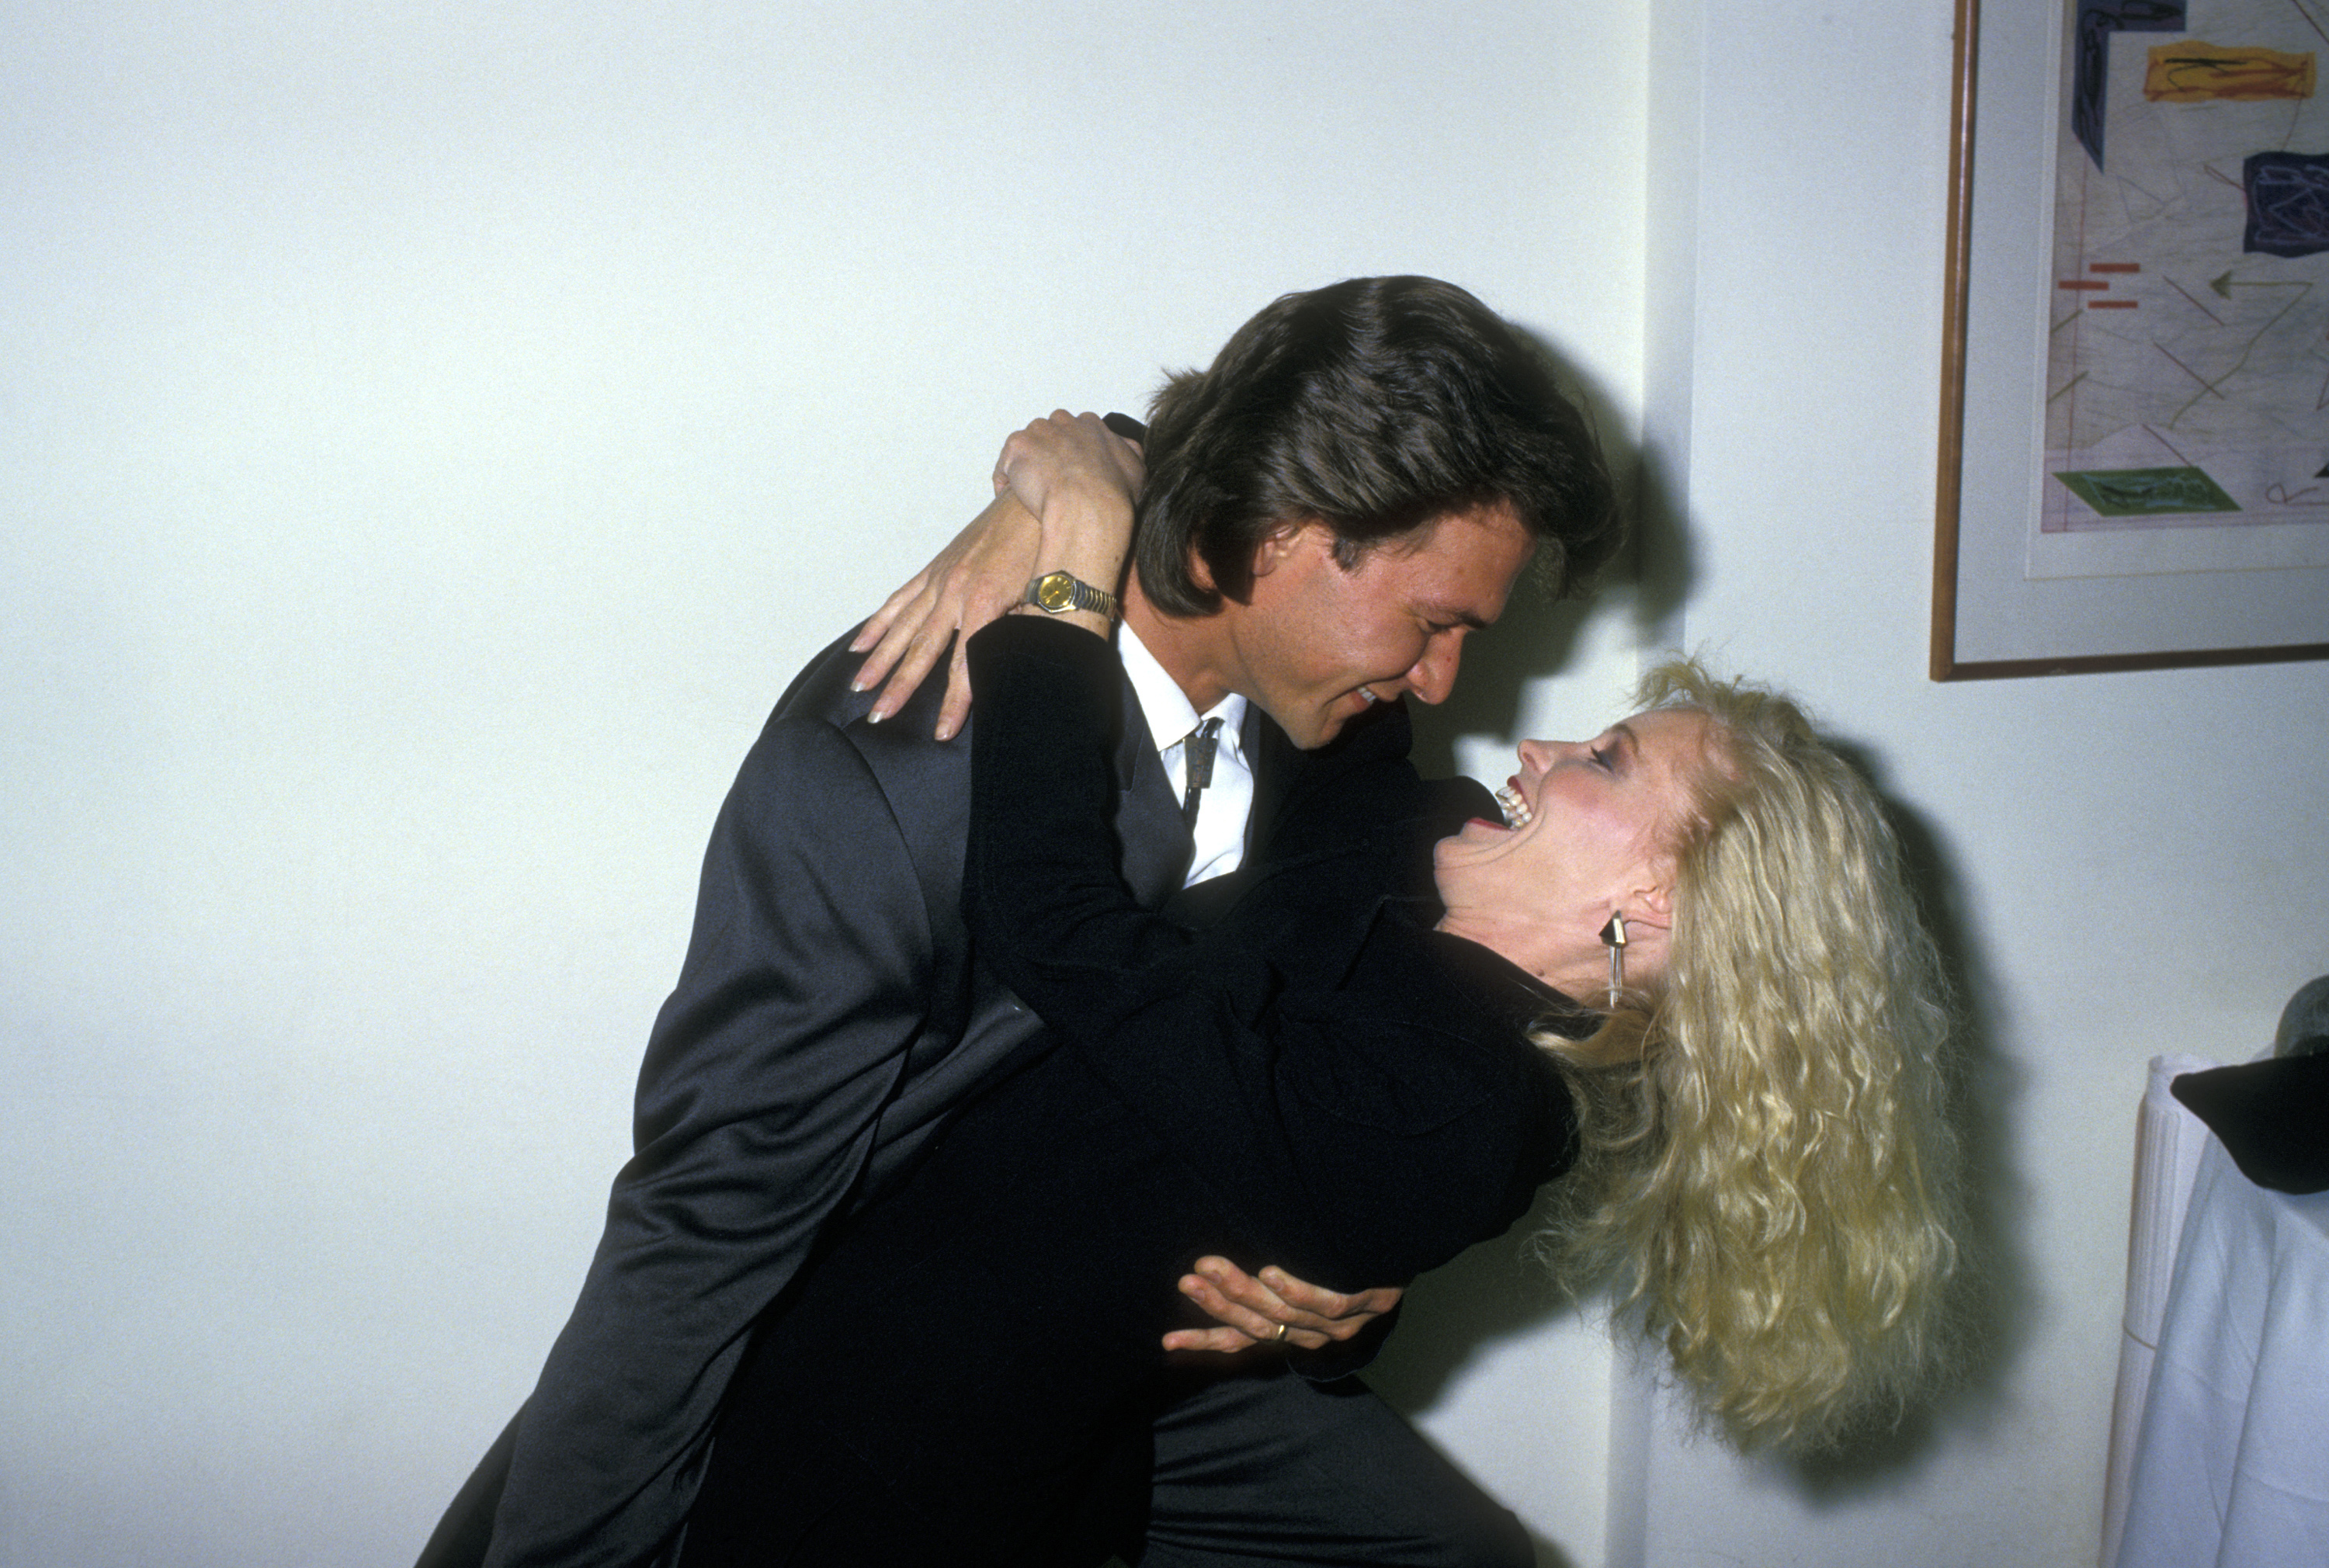 El actor Patrick Swayze y su esposa Lisa Niemi asisten al estreno de "Amanecer de acero" el 5 de noviembre de 1987, en el restaurante Jam's de Nueva York. | Fuente: Getty Images